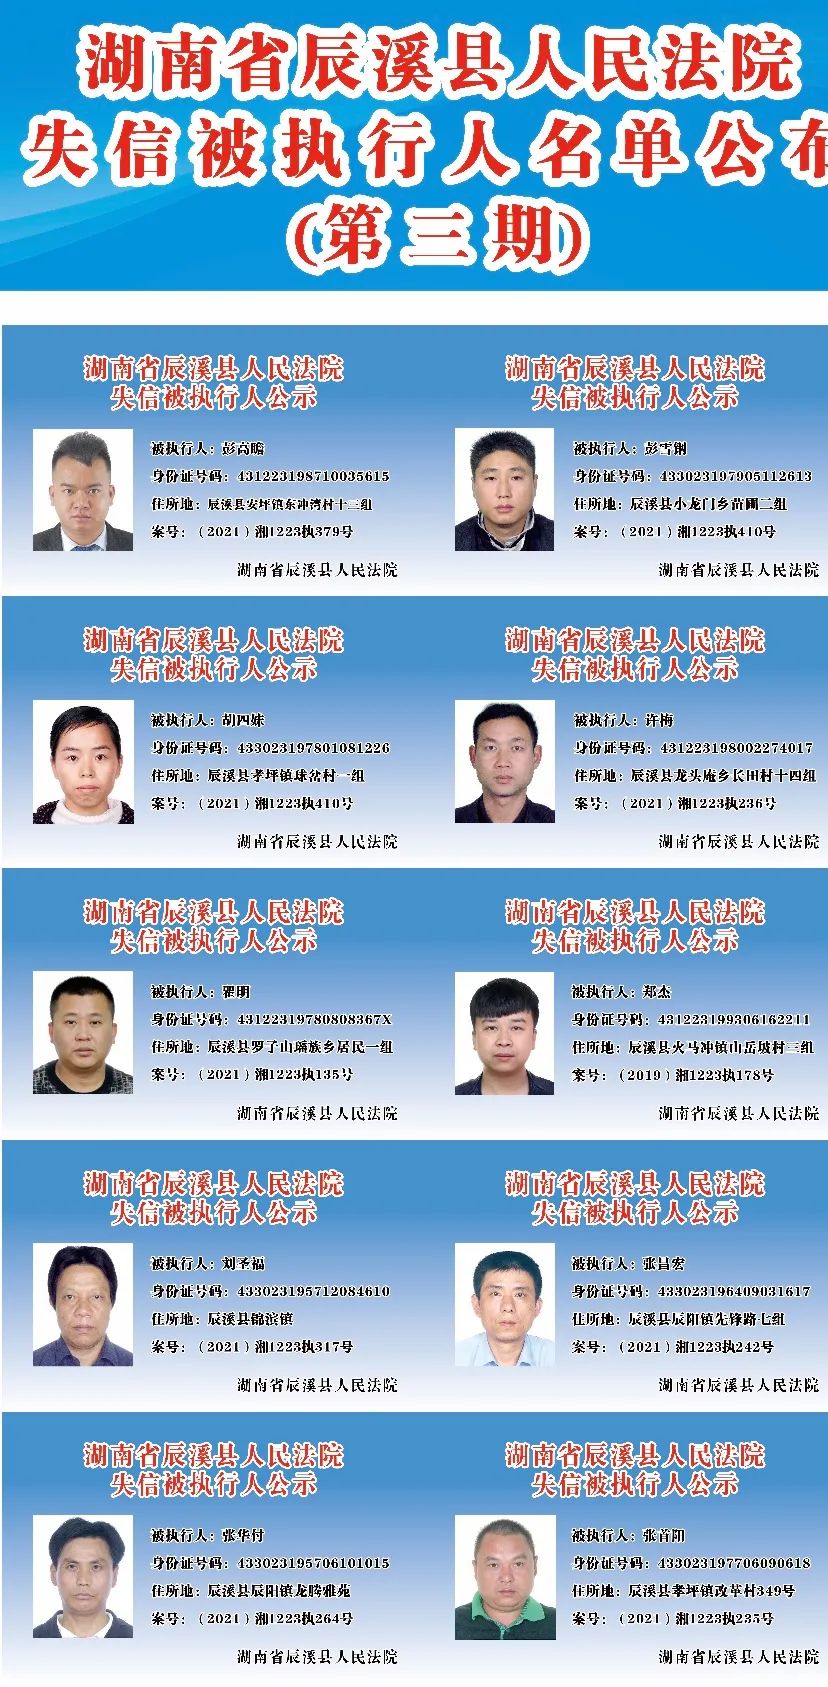 辰溪县人民法院2021年第三批失信被执行人名单公布